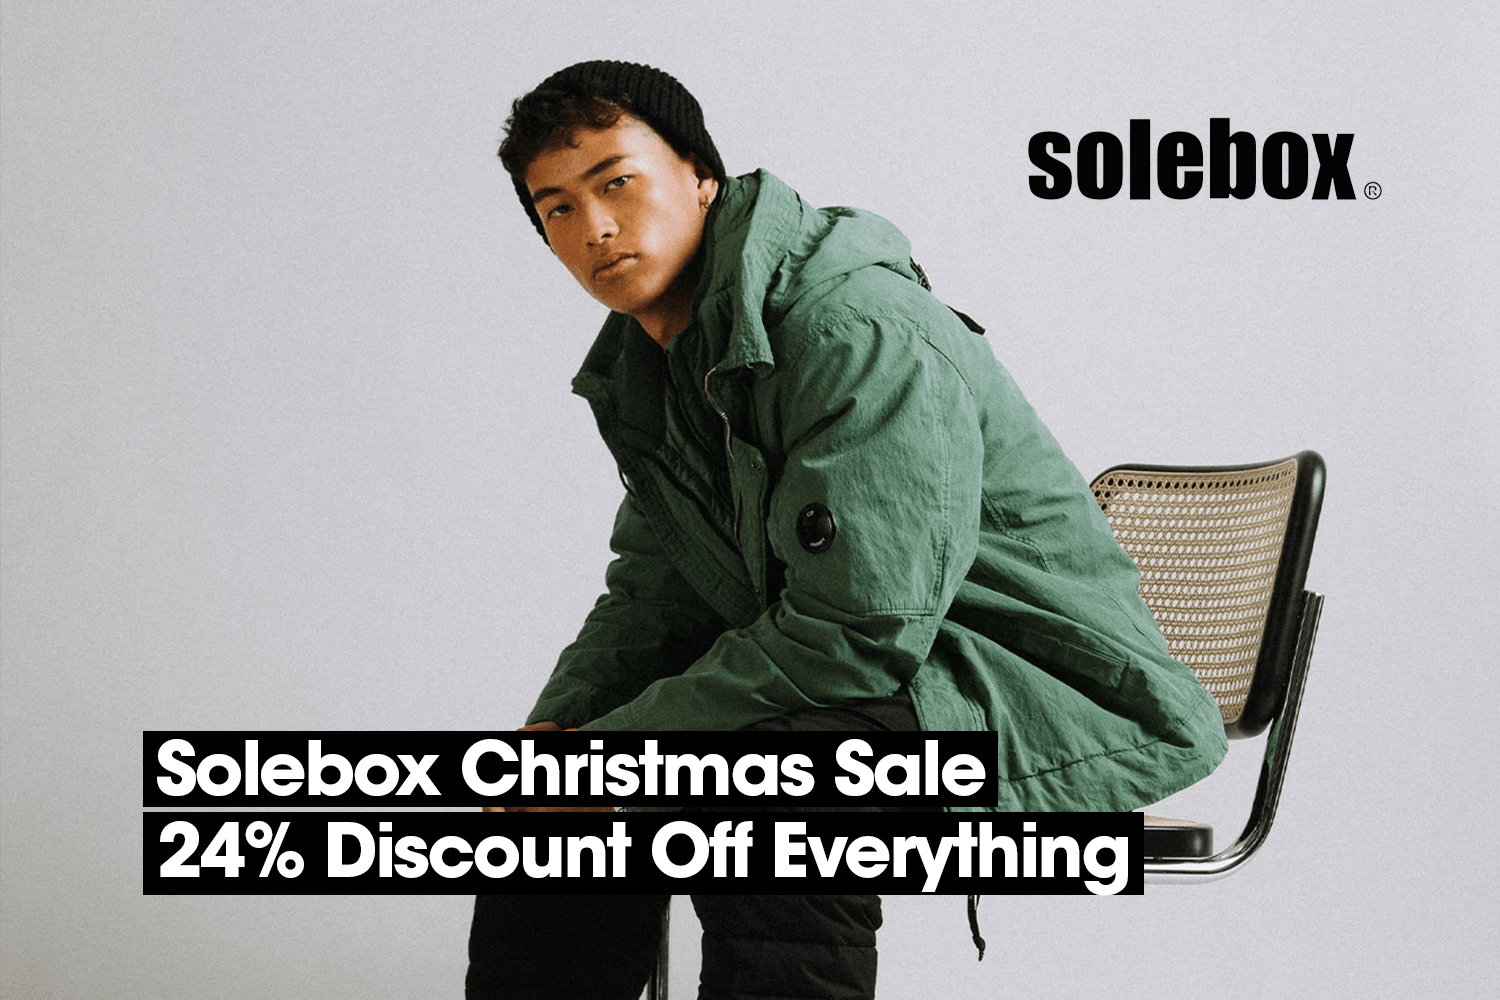 Der Solebox Christmas Sale mit 24% Rabatt